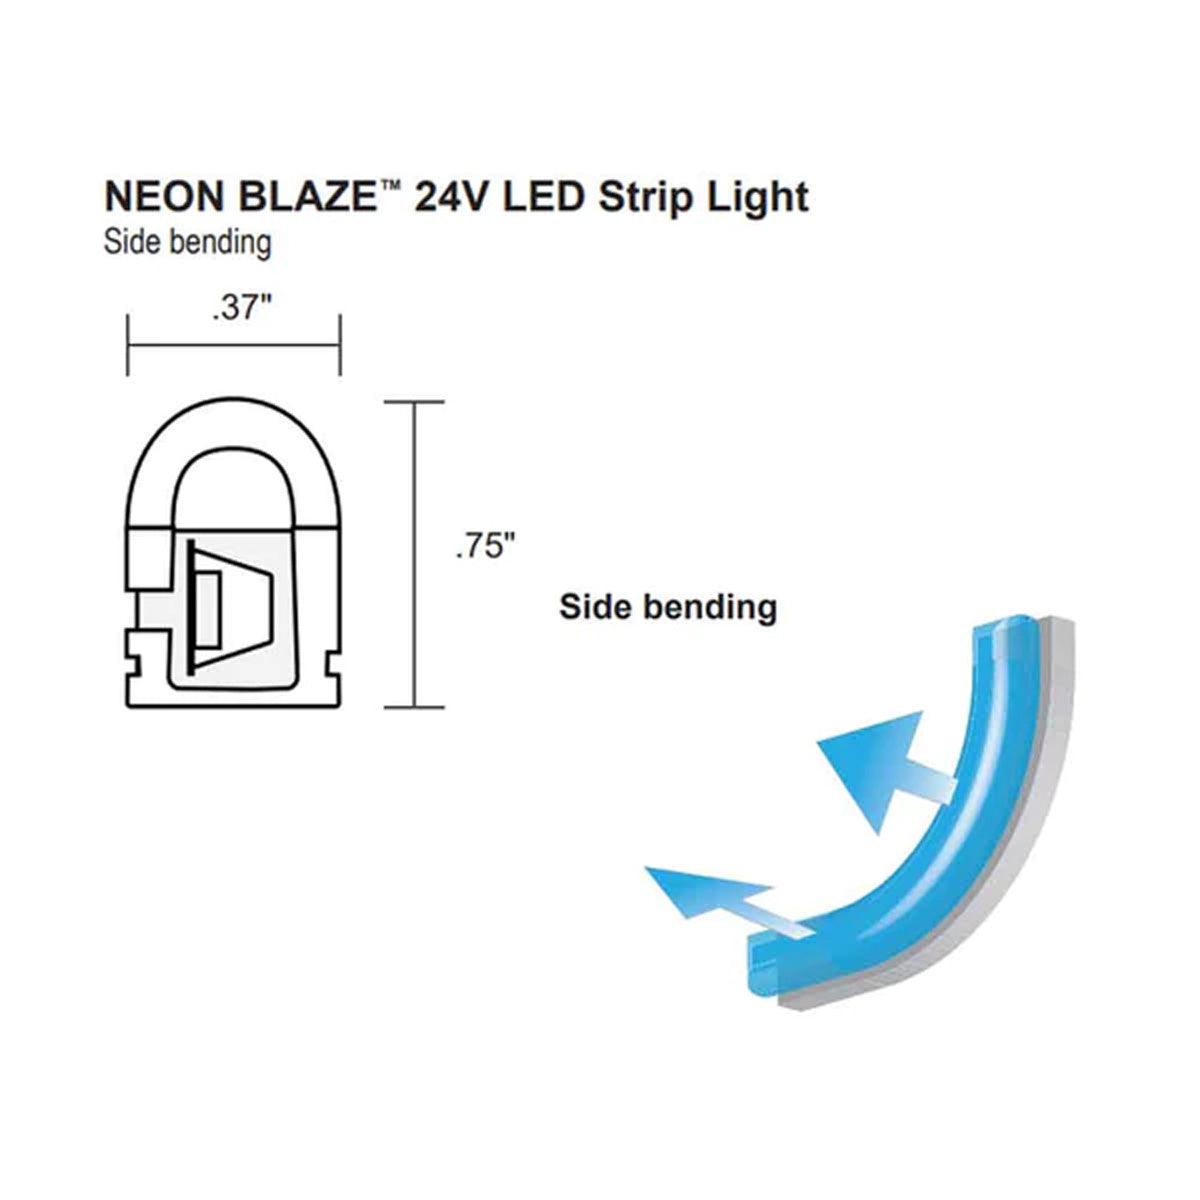 Neon BLAZE LED Neon Strip Light, 24V, Side Bending - Bees Lighting